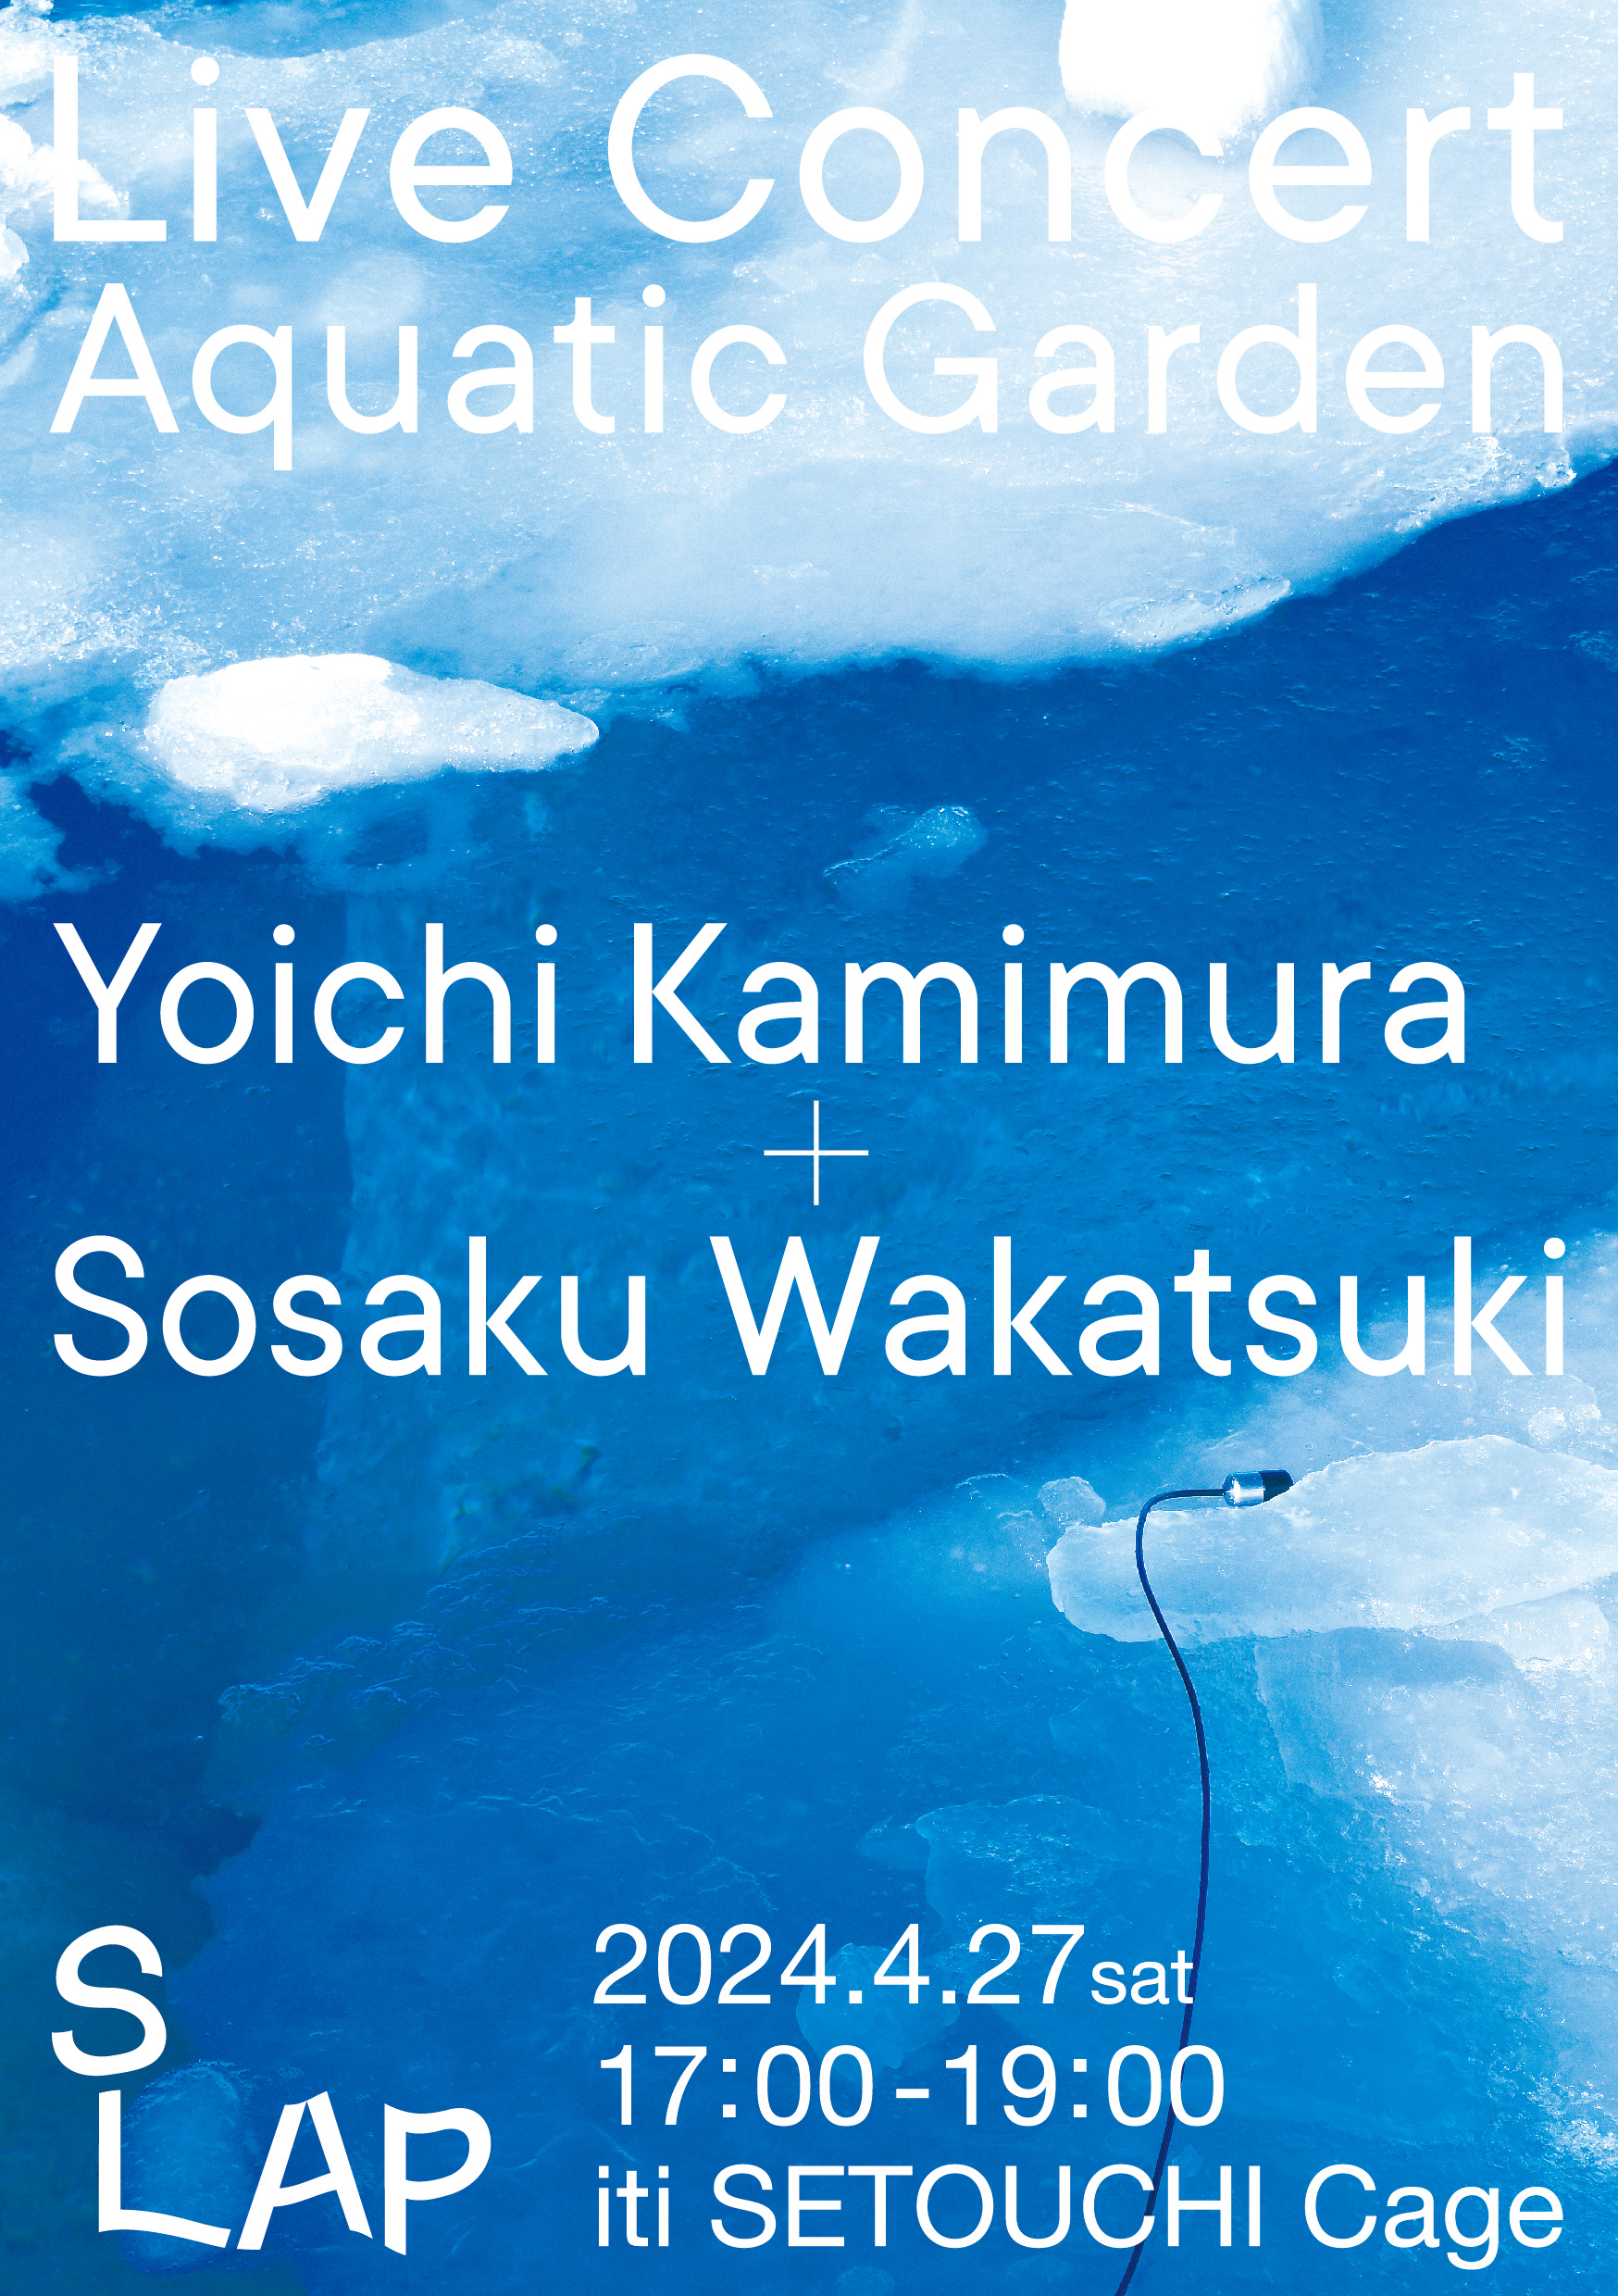 4/27(sat) ライブ・コンサート「Aquatic Garden」